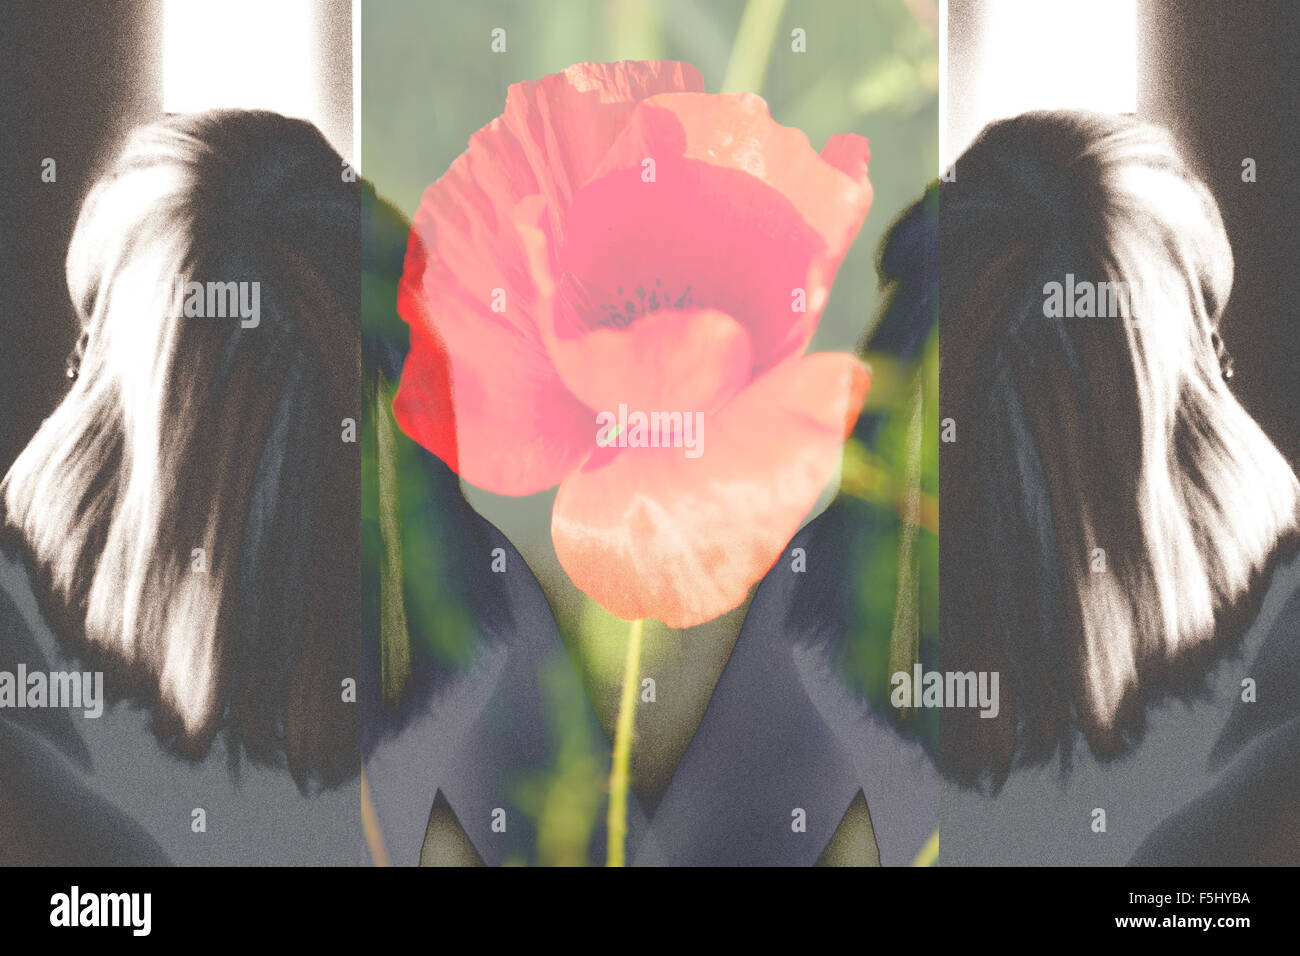 Strukturiert und Doppel-Portrait einer Frau von hinten mit einem roten Mohn in der Mitte angezeigt. Digitale Kunst und Illustration. Stockfoto